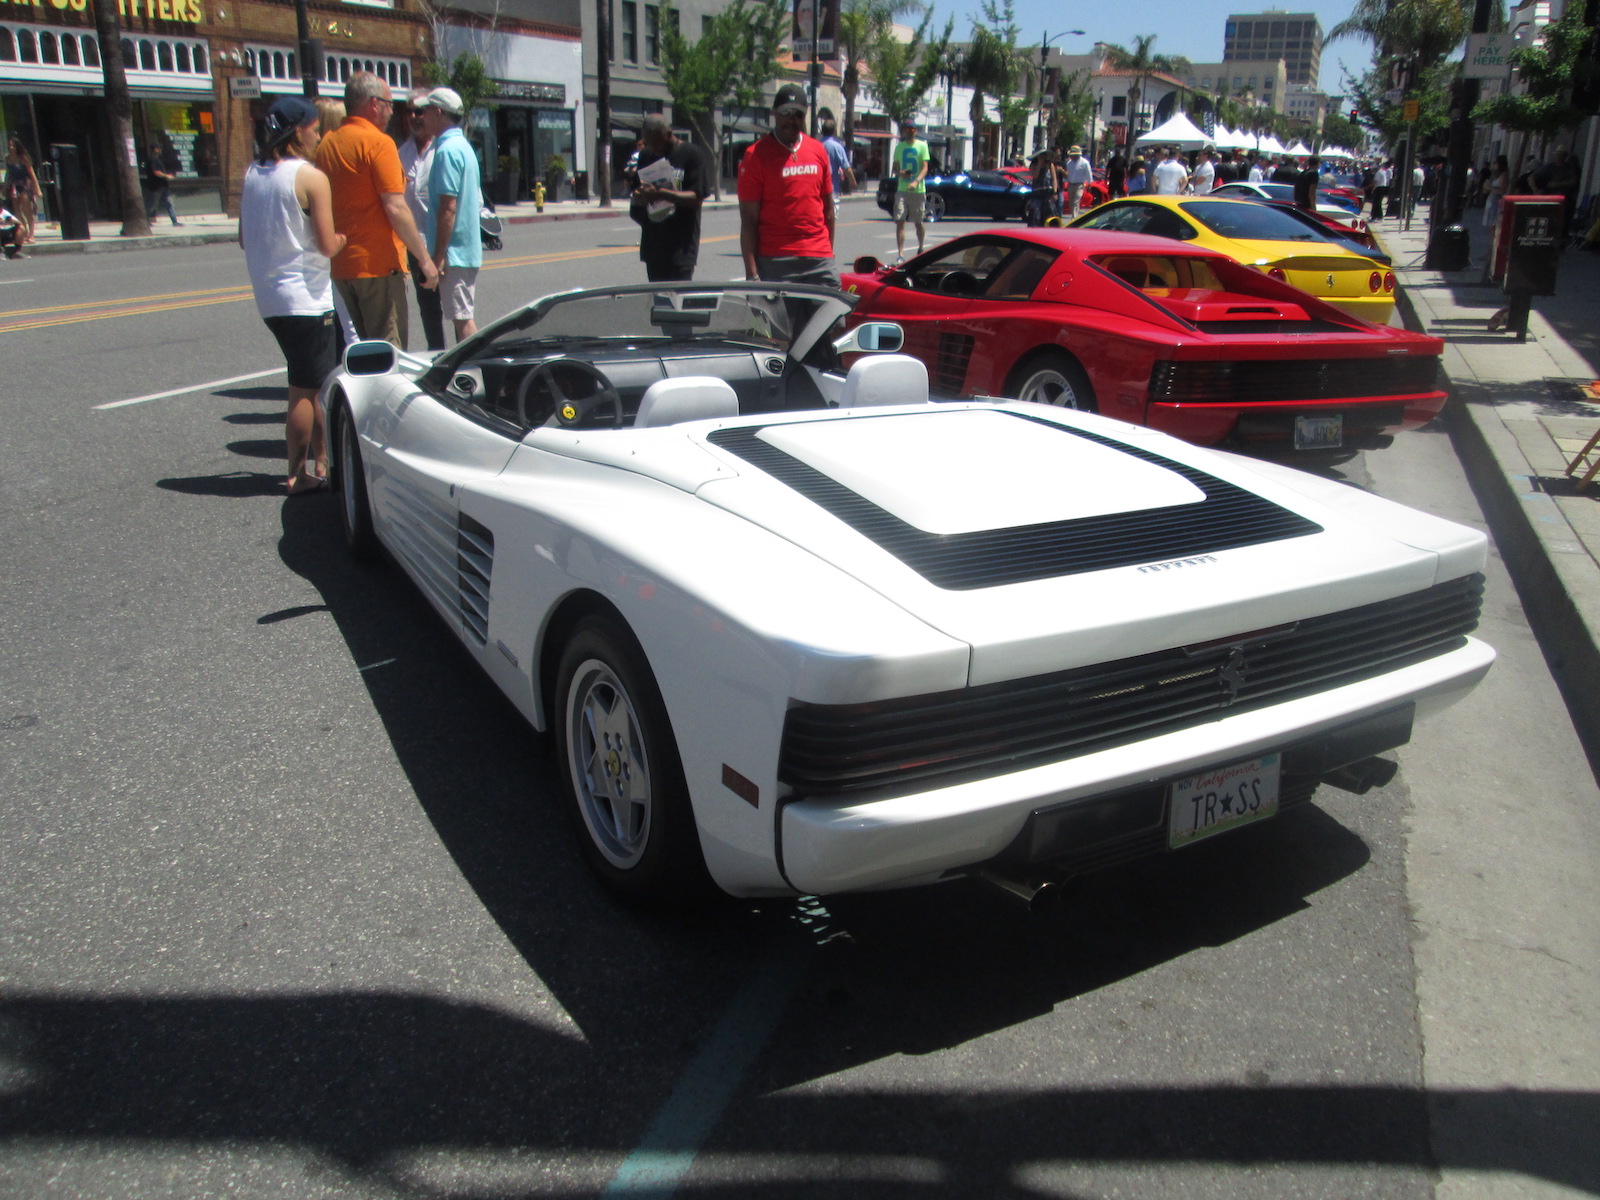 Ferraris On Colorado Boulevard - Pasadena, California